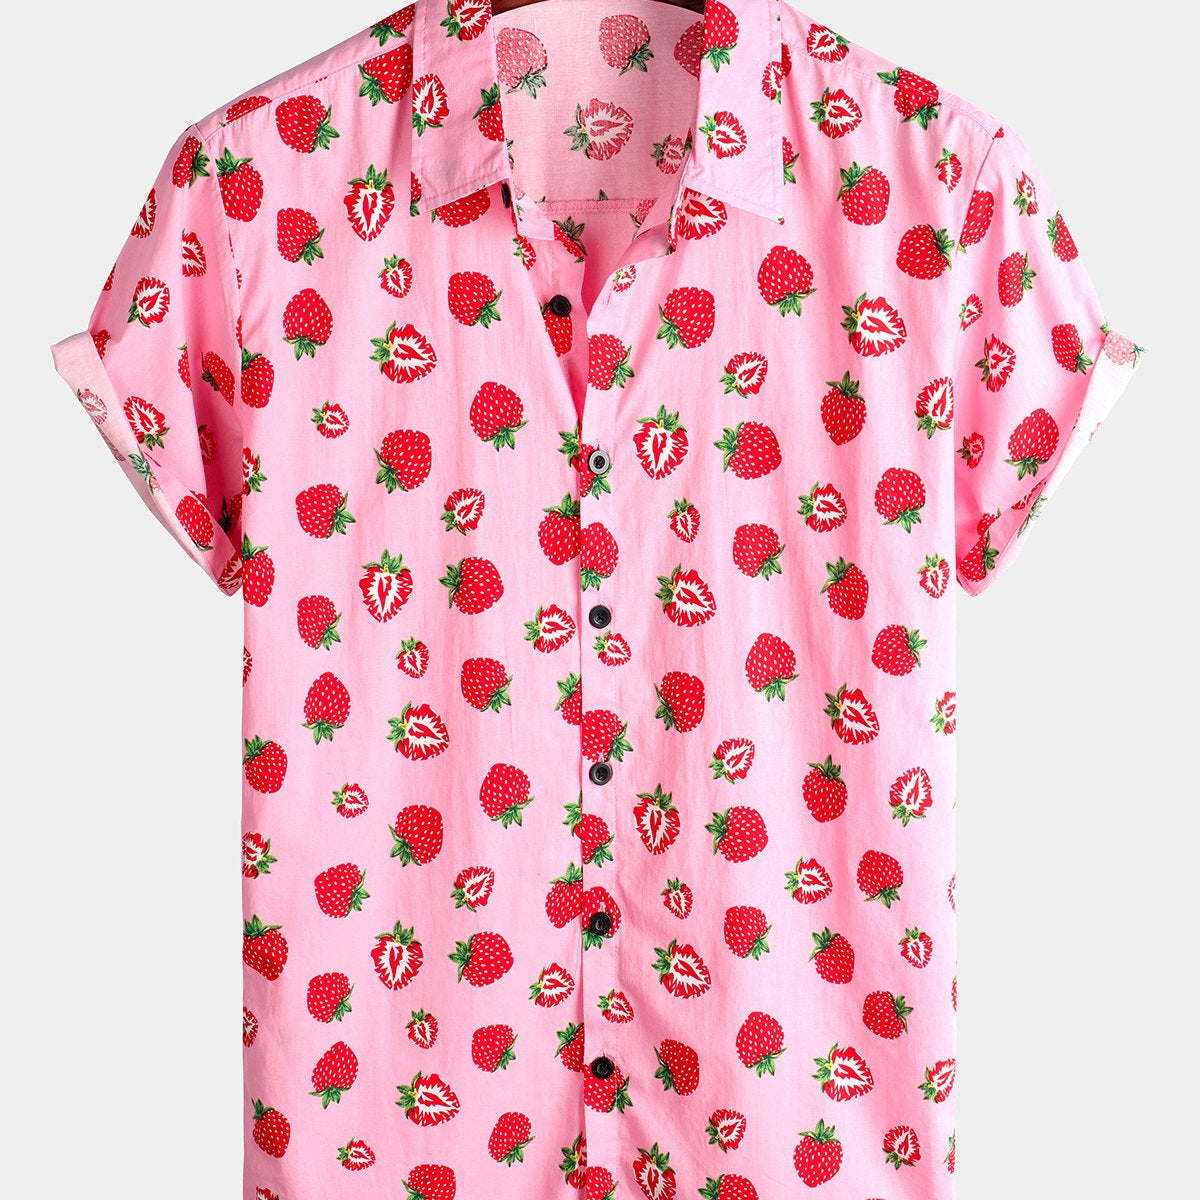 Chemise hawaïenne boutonnée à manches courtes en coton pour homme avec imprimé fraise et fruits